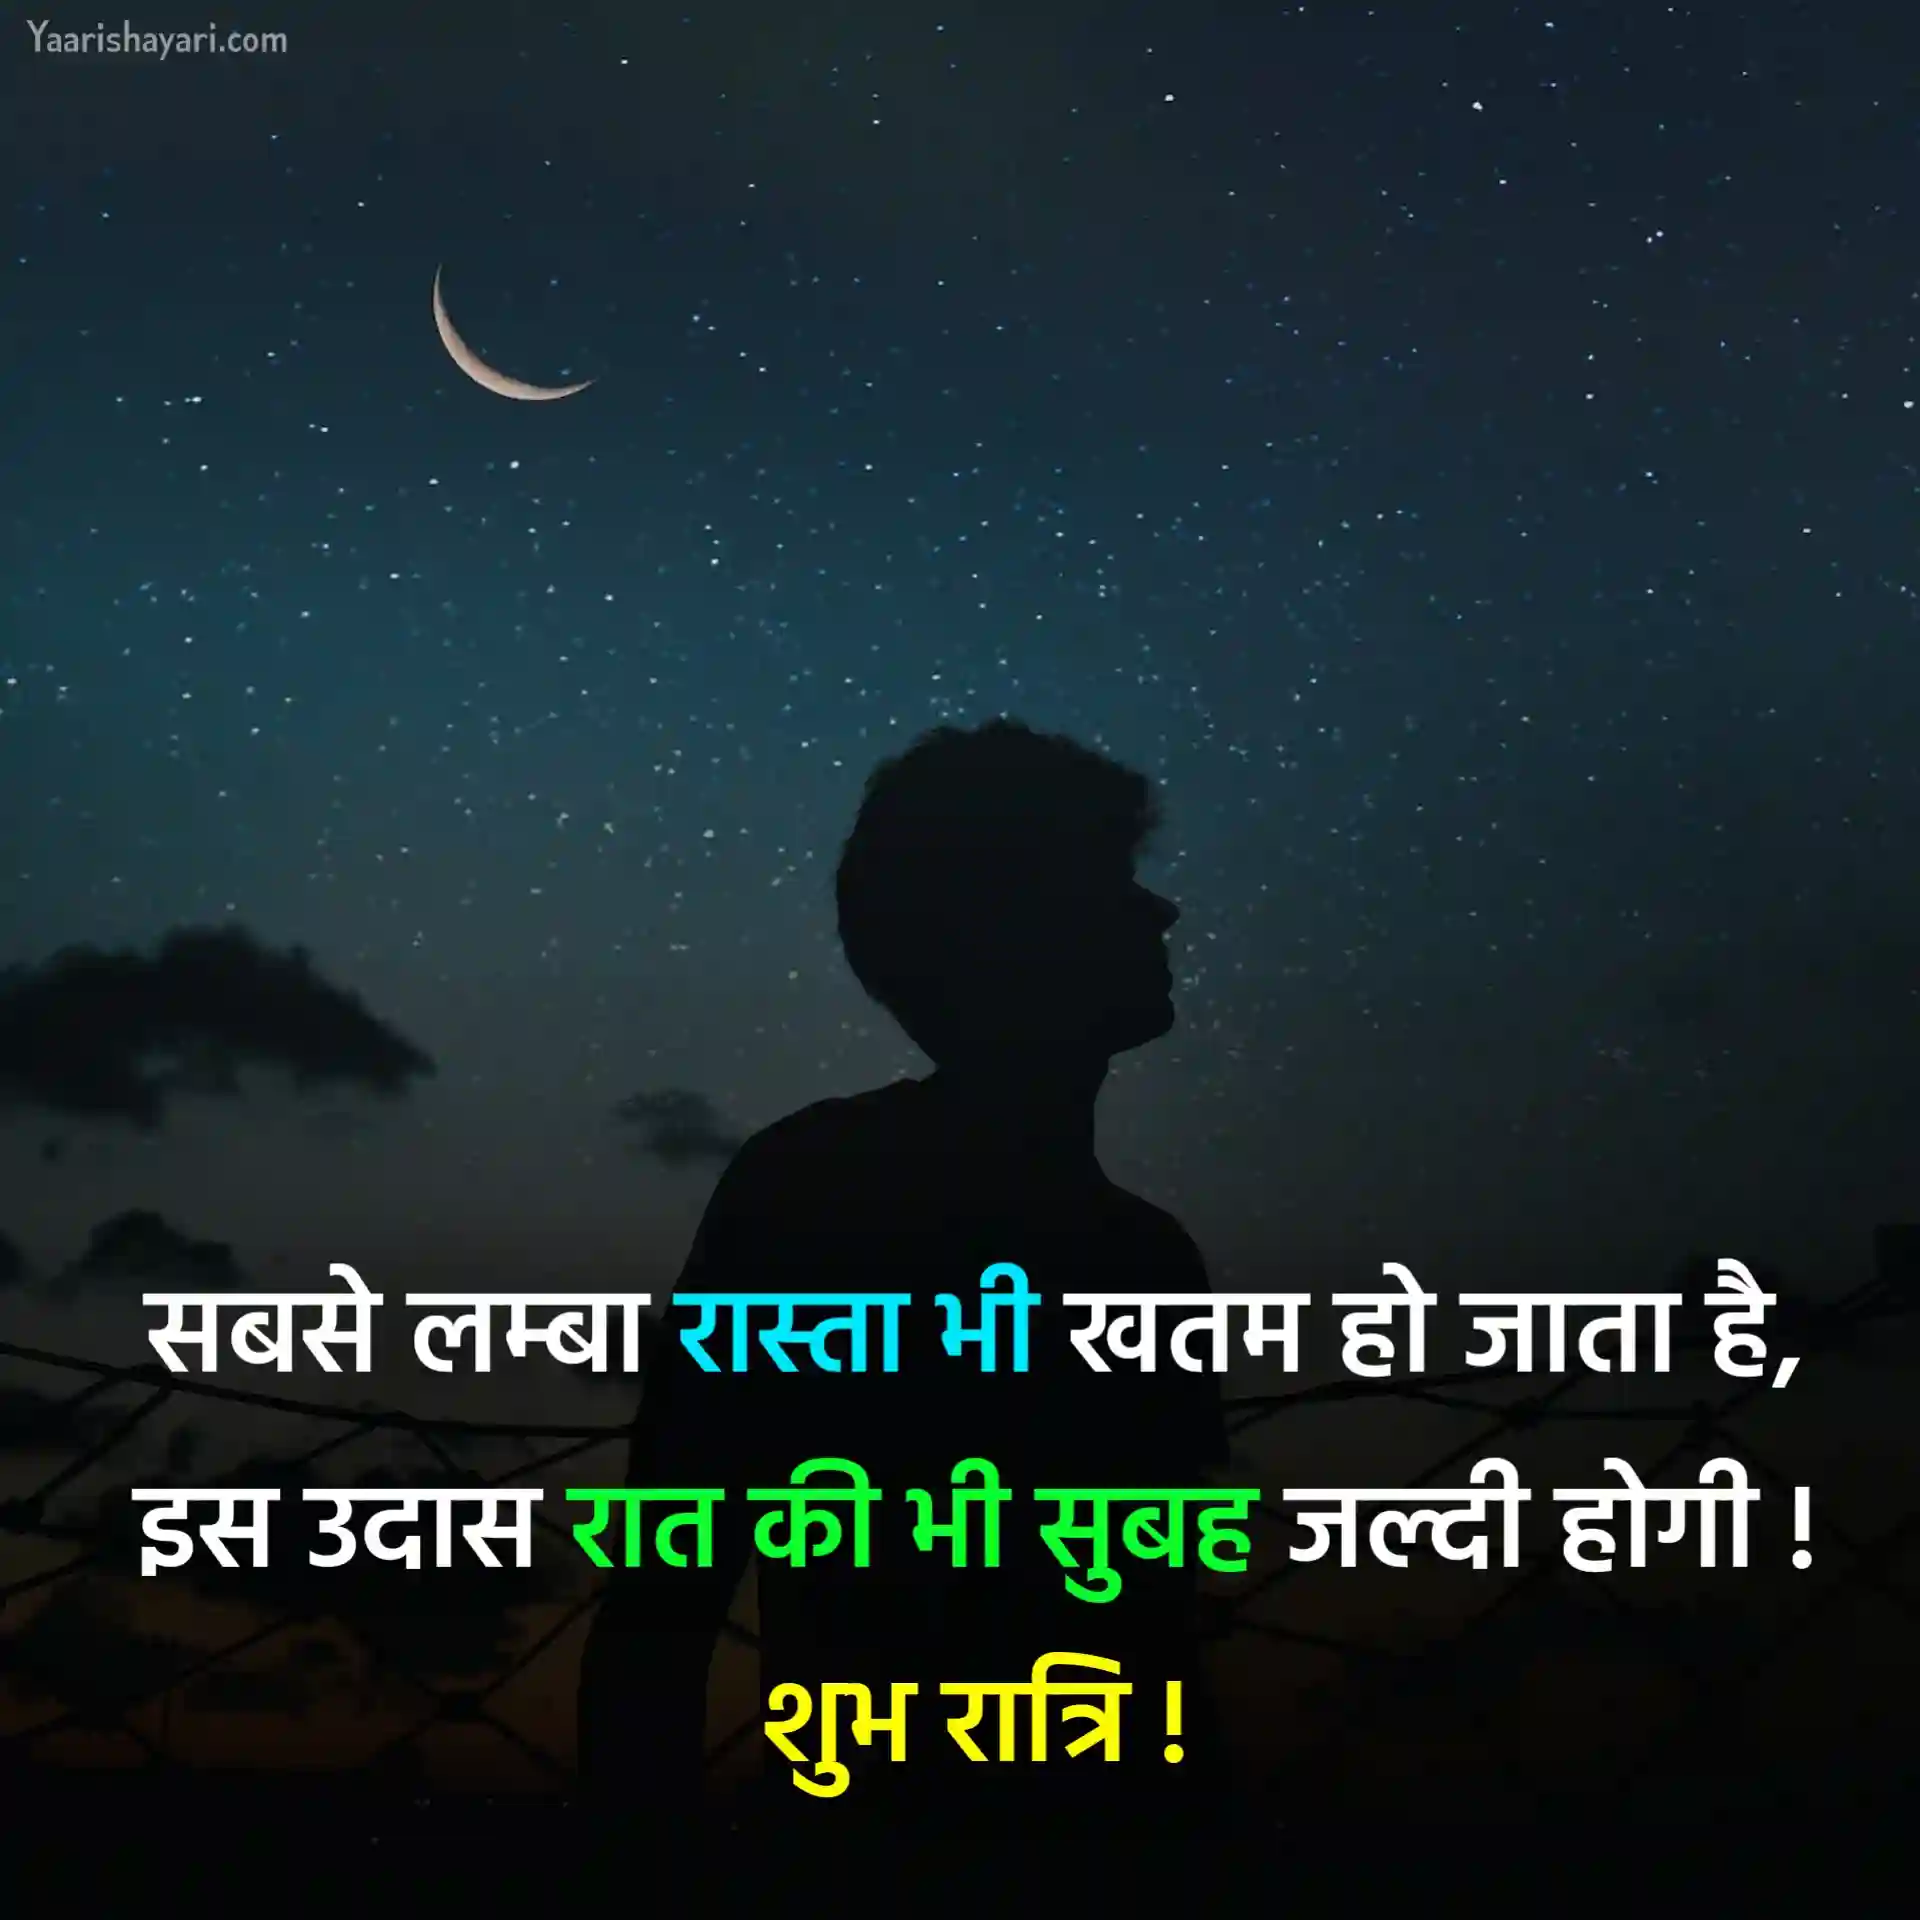 Good Night Wishes in Hindi